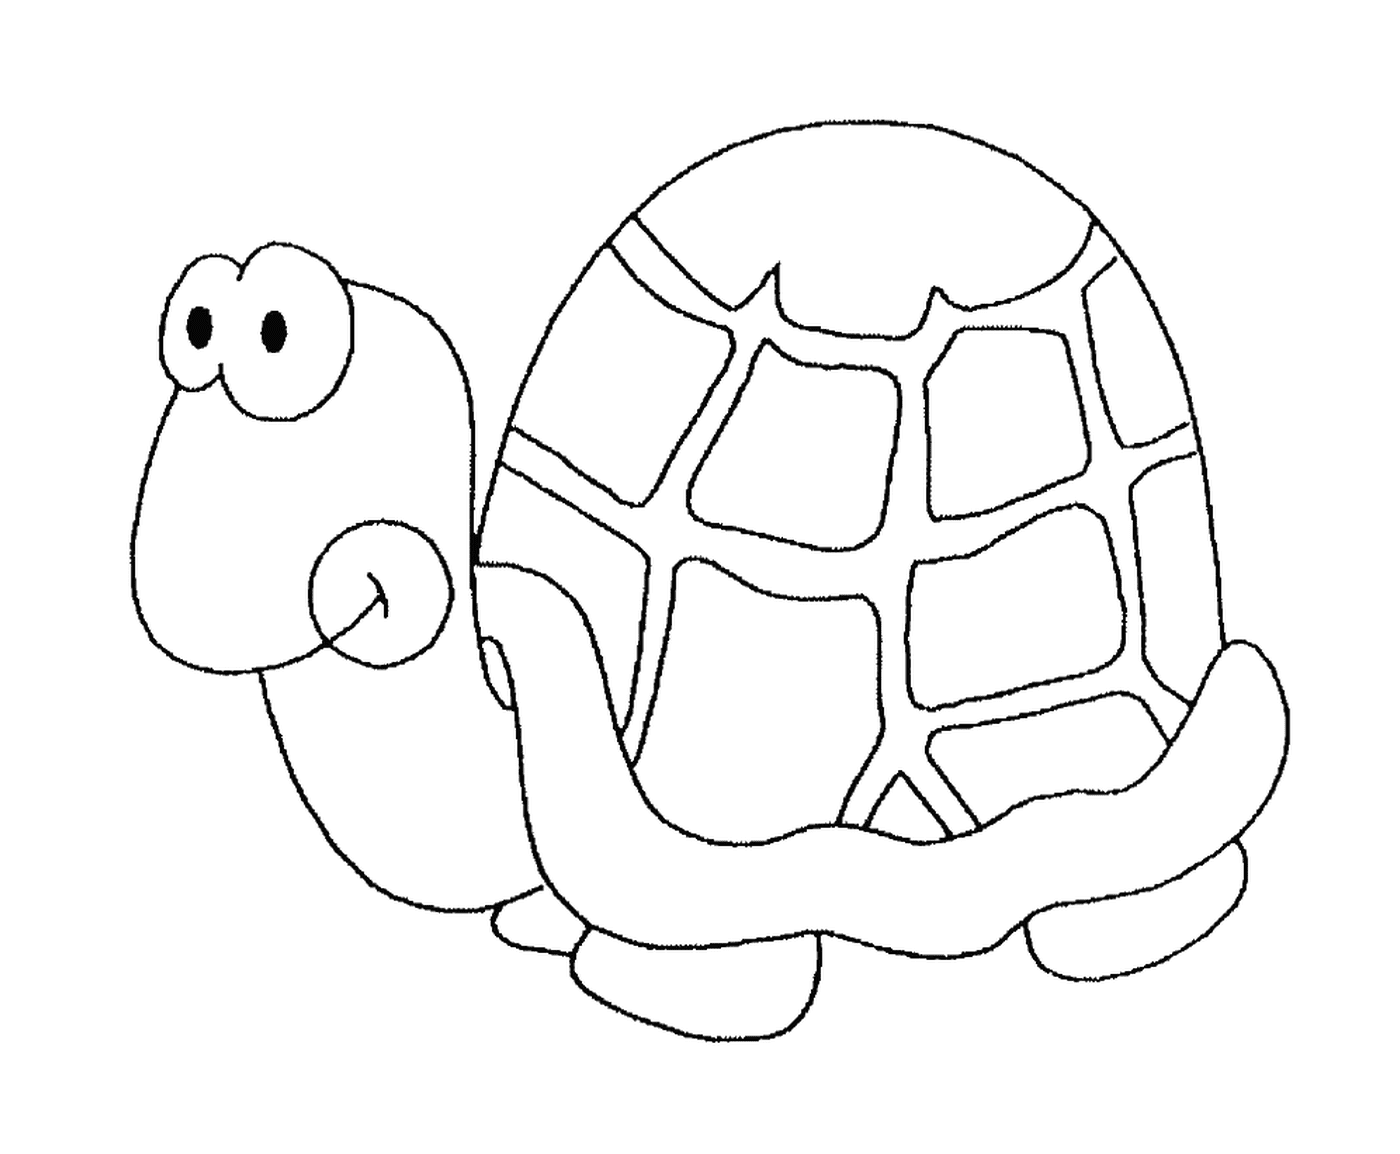  Черепаха с круглой раковиной 